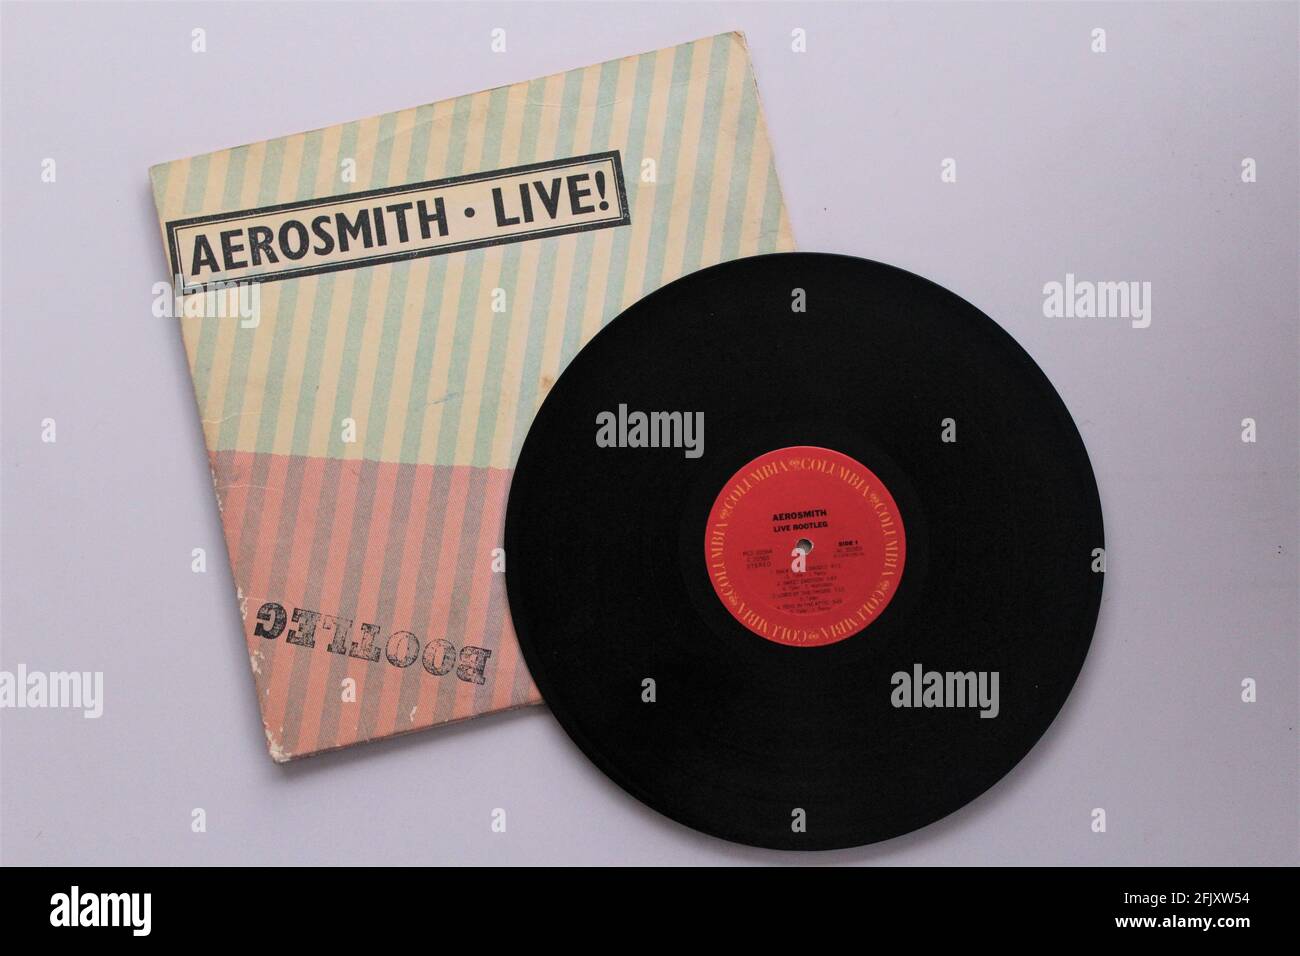 Klassische Rockband, Aerosmith, Musikalbum auf Vinyl-Schallplatte. Bootleg Genannt Stockfoto